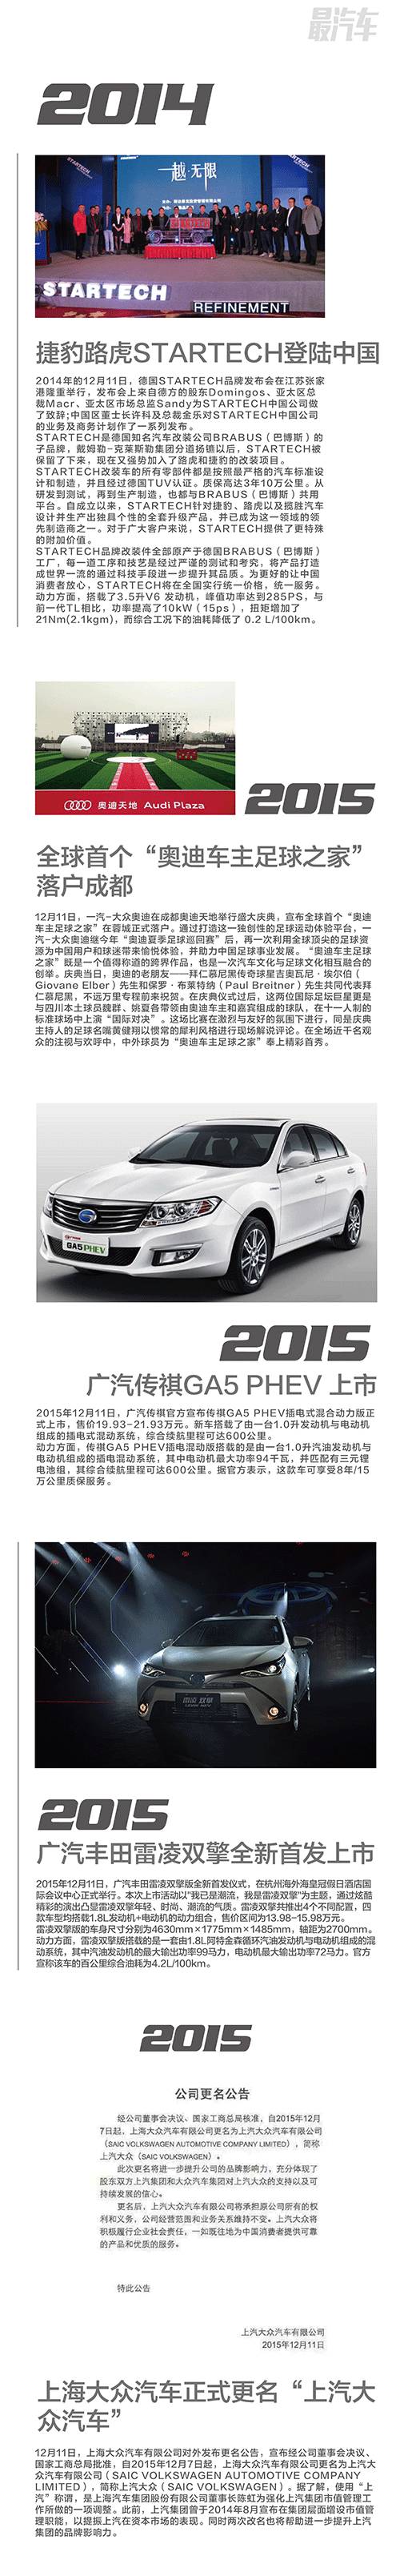 上海大众汽车正式更名“上汽大众汽车” 车史上的今天12月11日